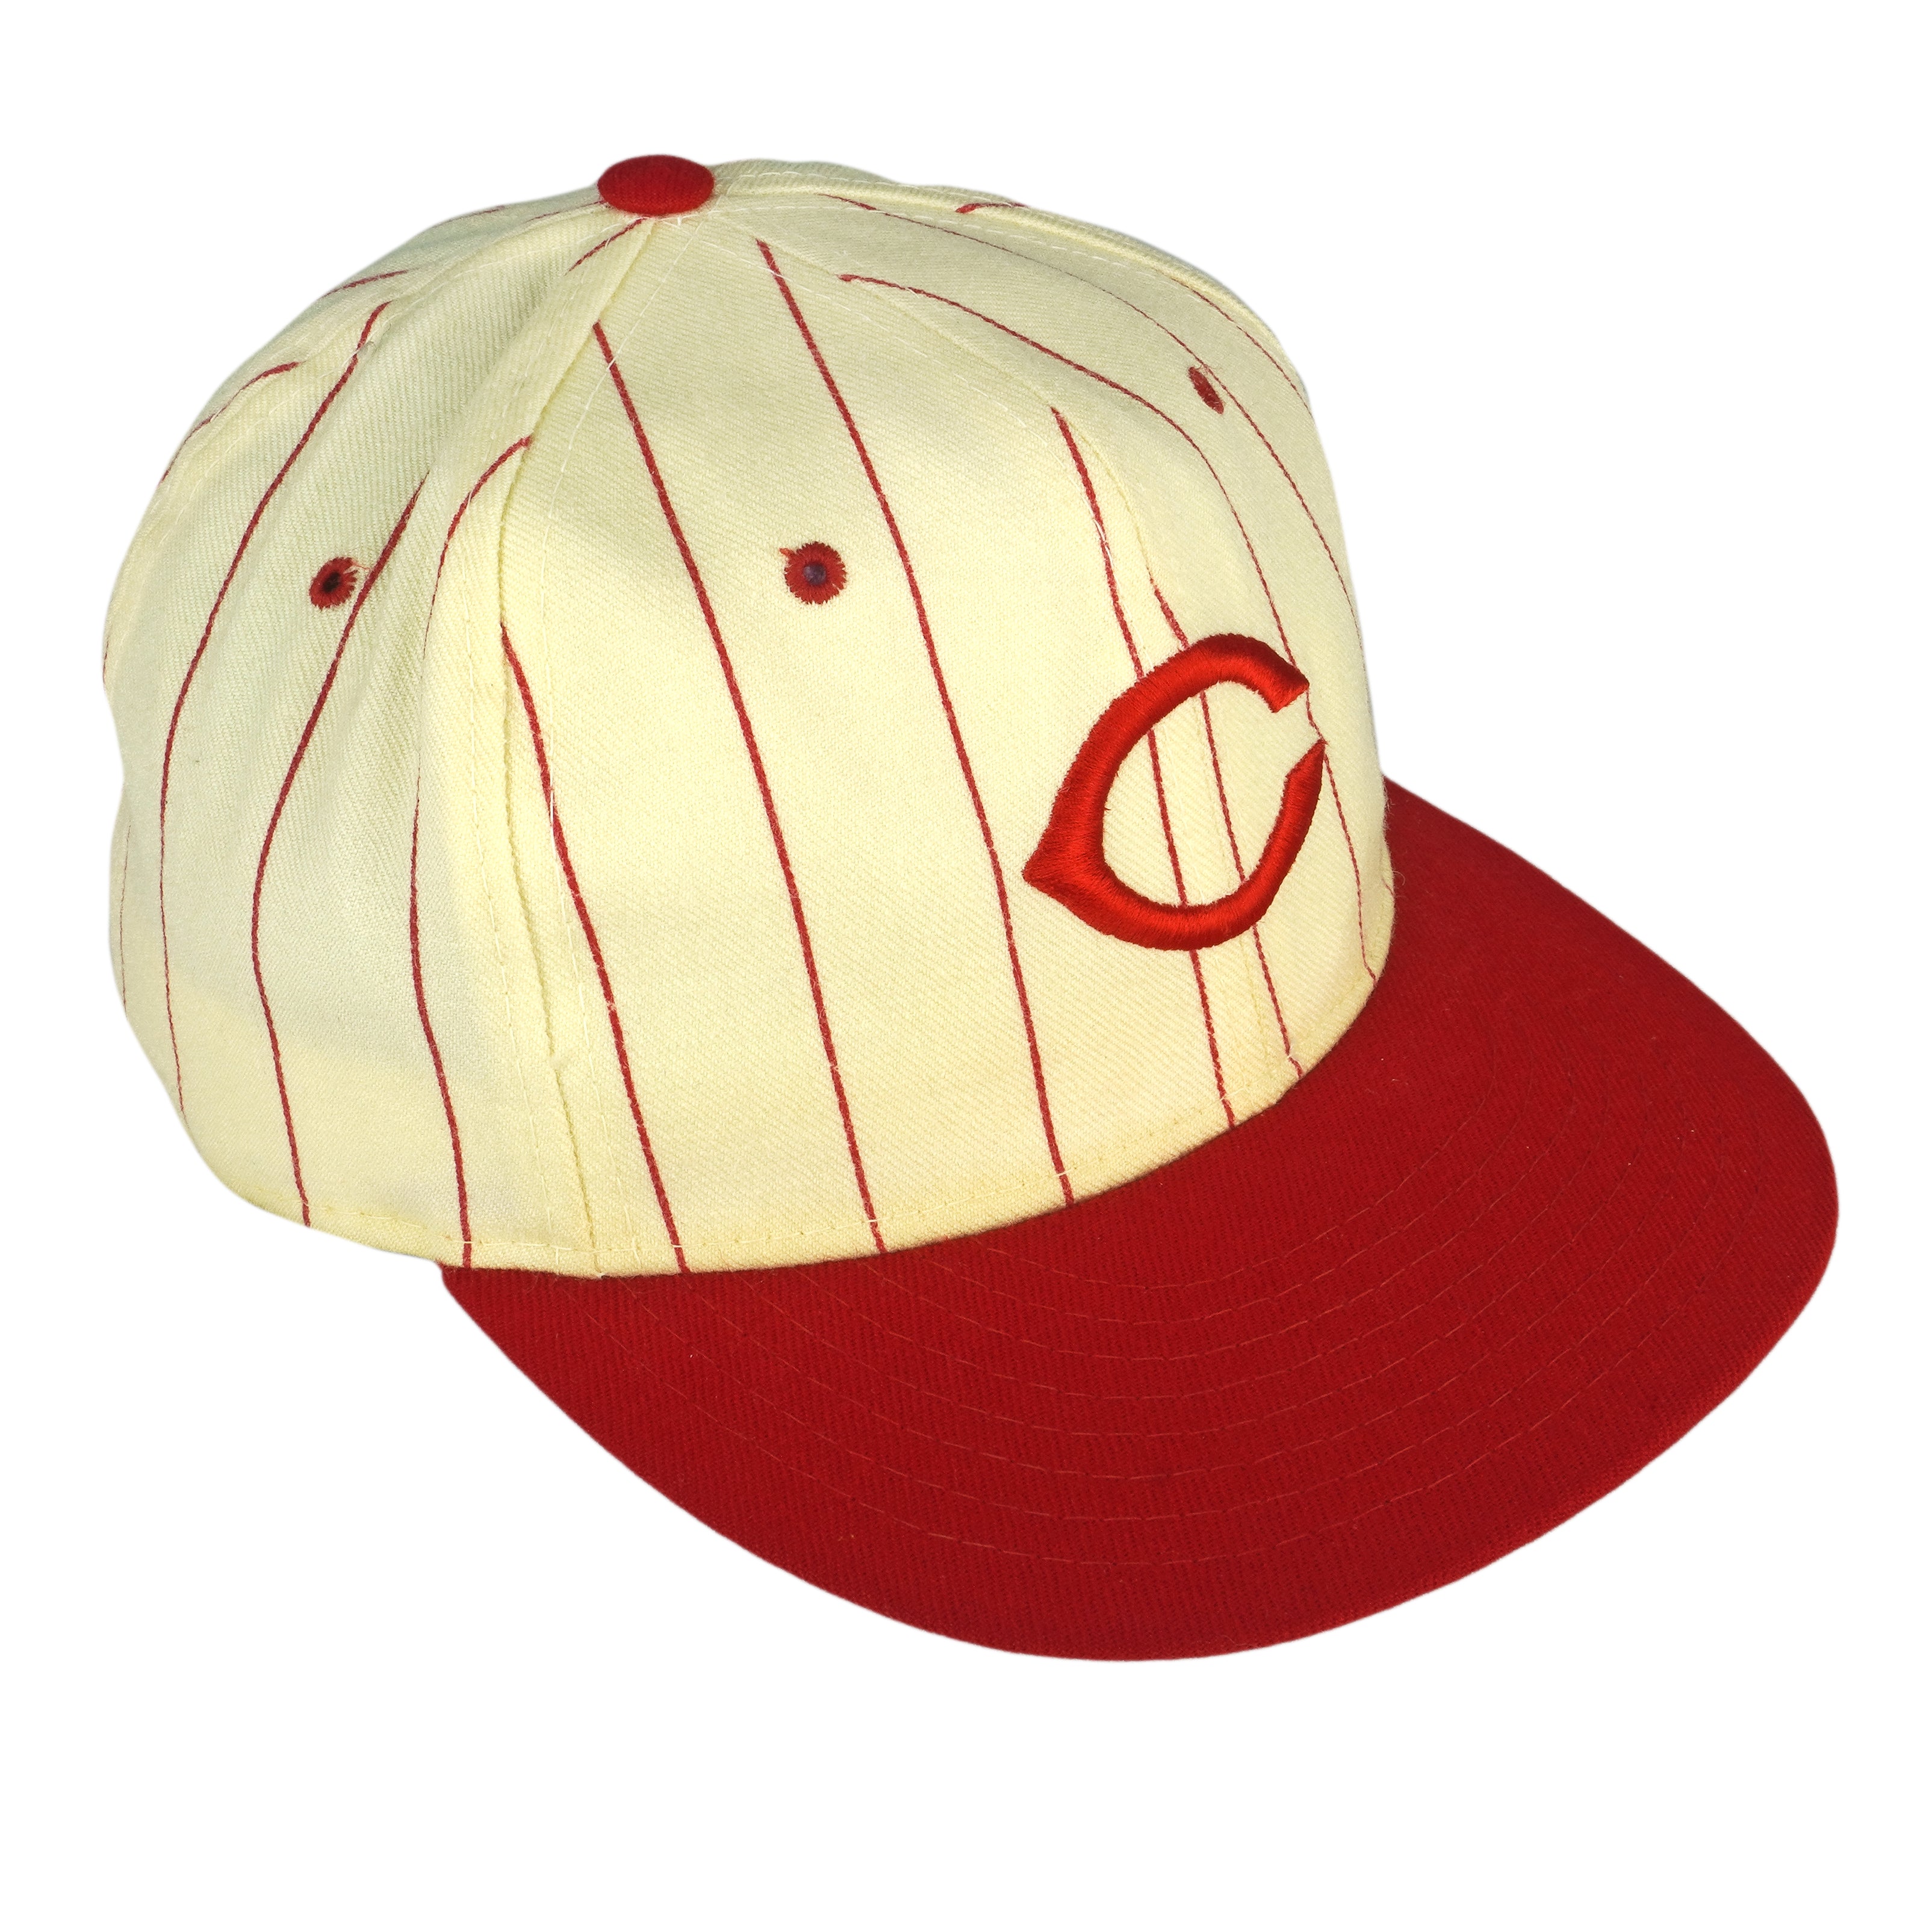 Cincinnati Reds MLB Puma Vintage Snapback Team Hat